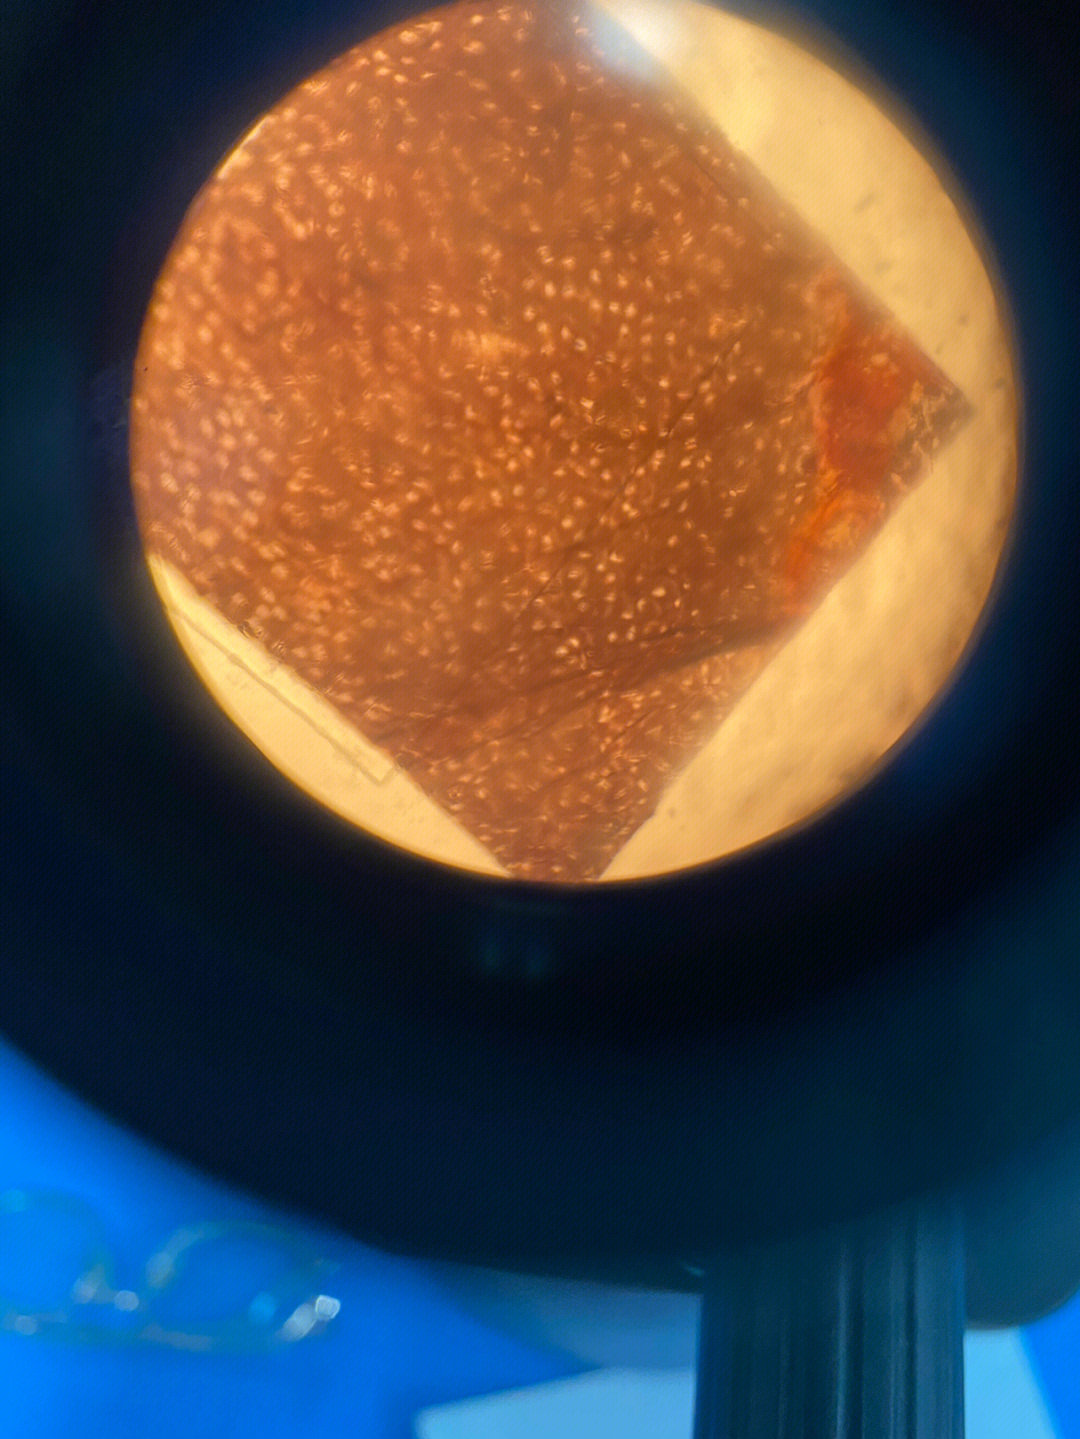 骨磨片显微镜图图片